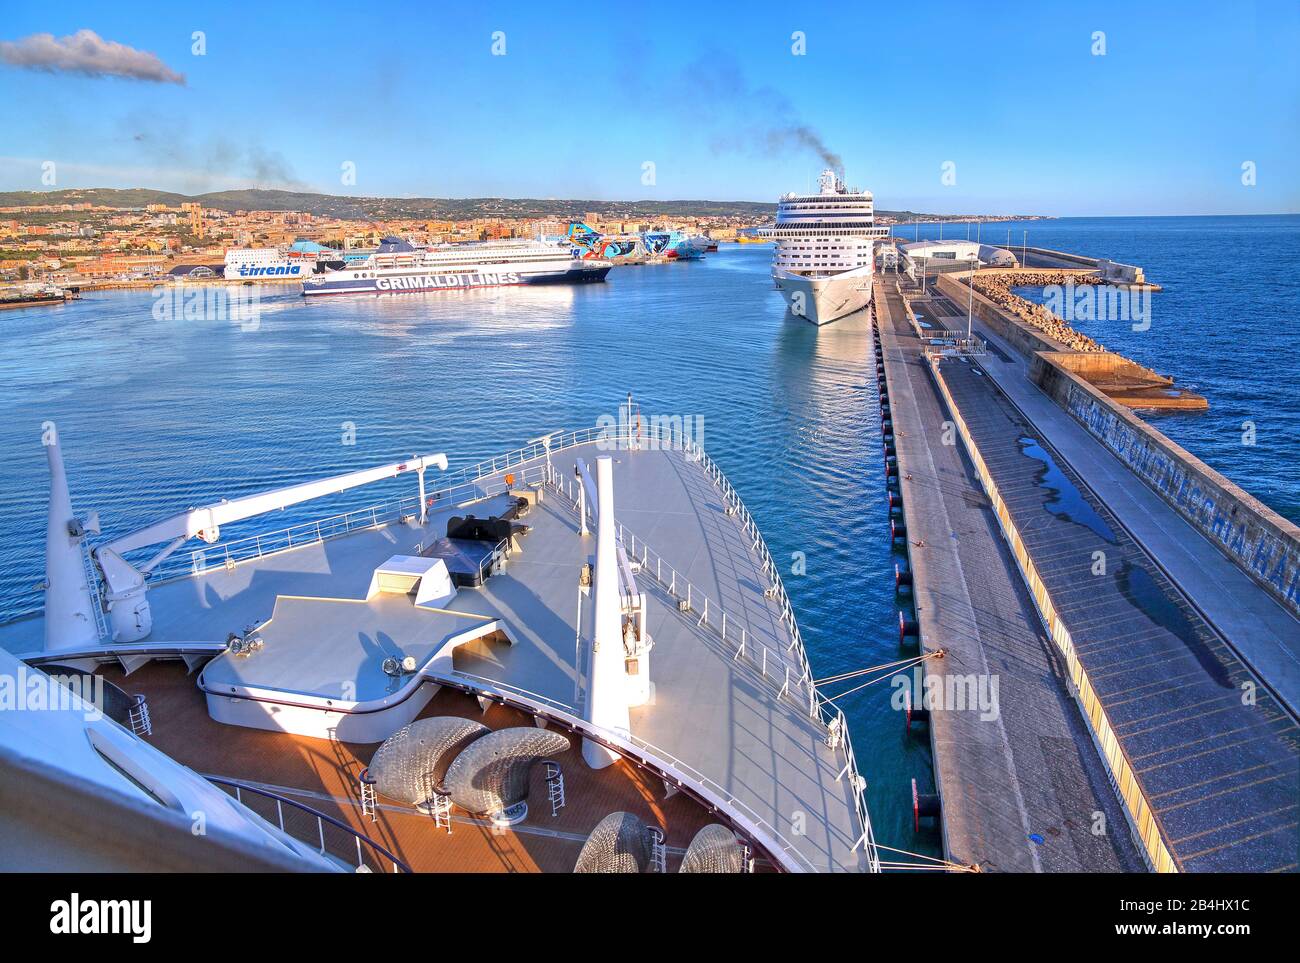 Cruise ships in the harbor, Civitavecchia, Lazio, Italy Stock Photo